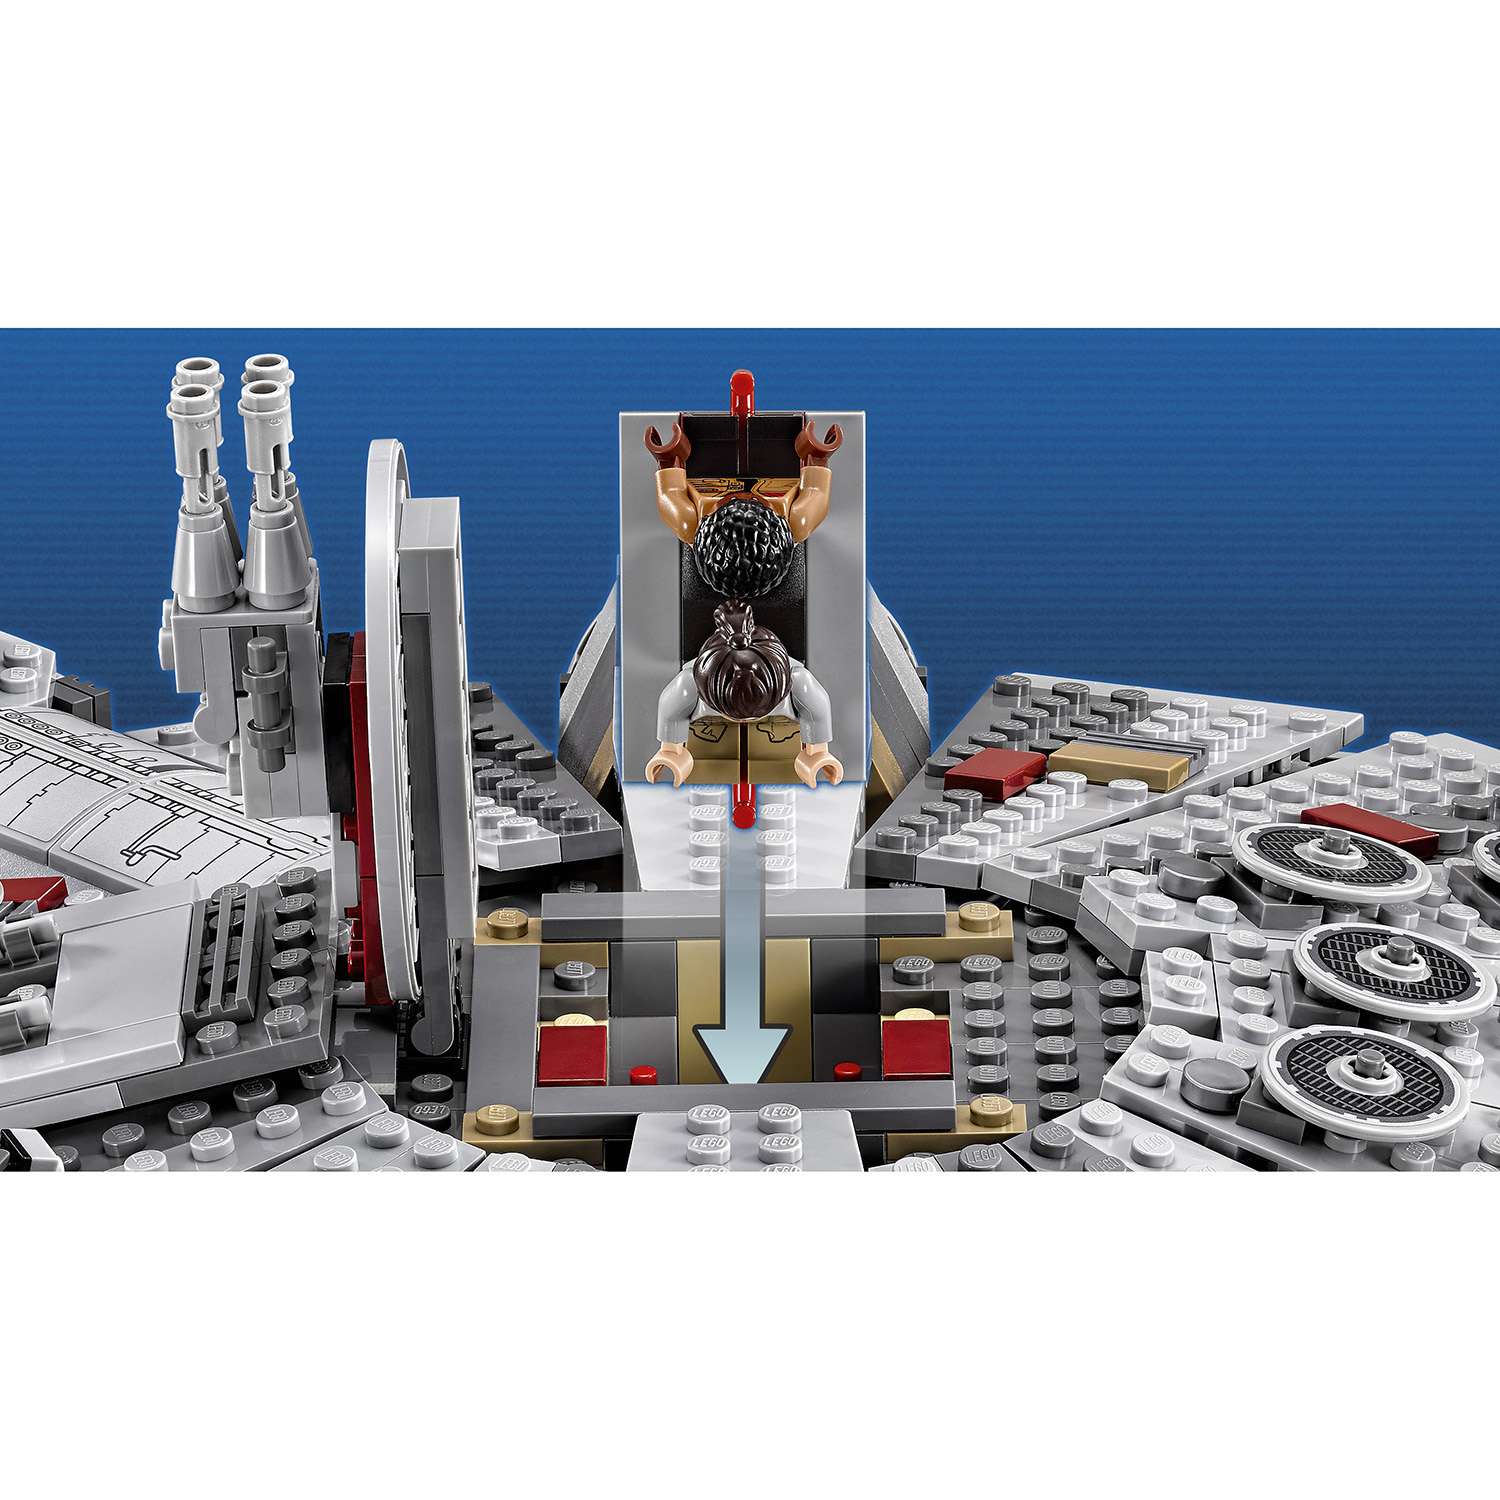 Конструктор LEGO Star Wars TM Сокол Тысячелетия (Millennium Falcon™) (75105) - фото 6